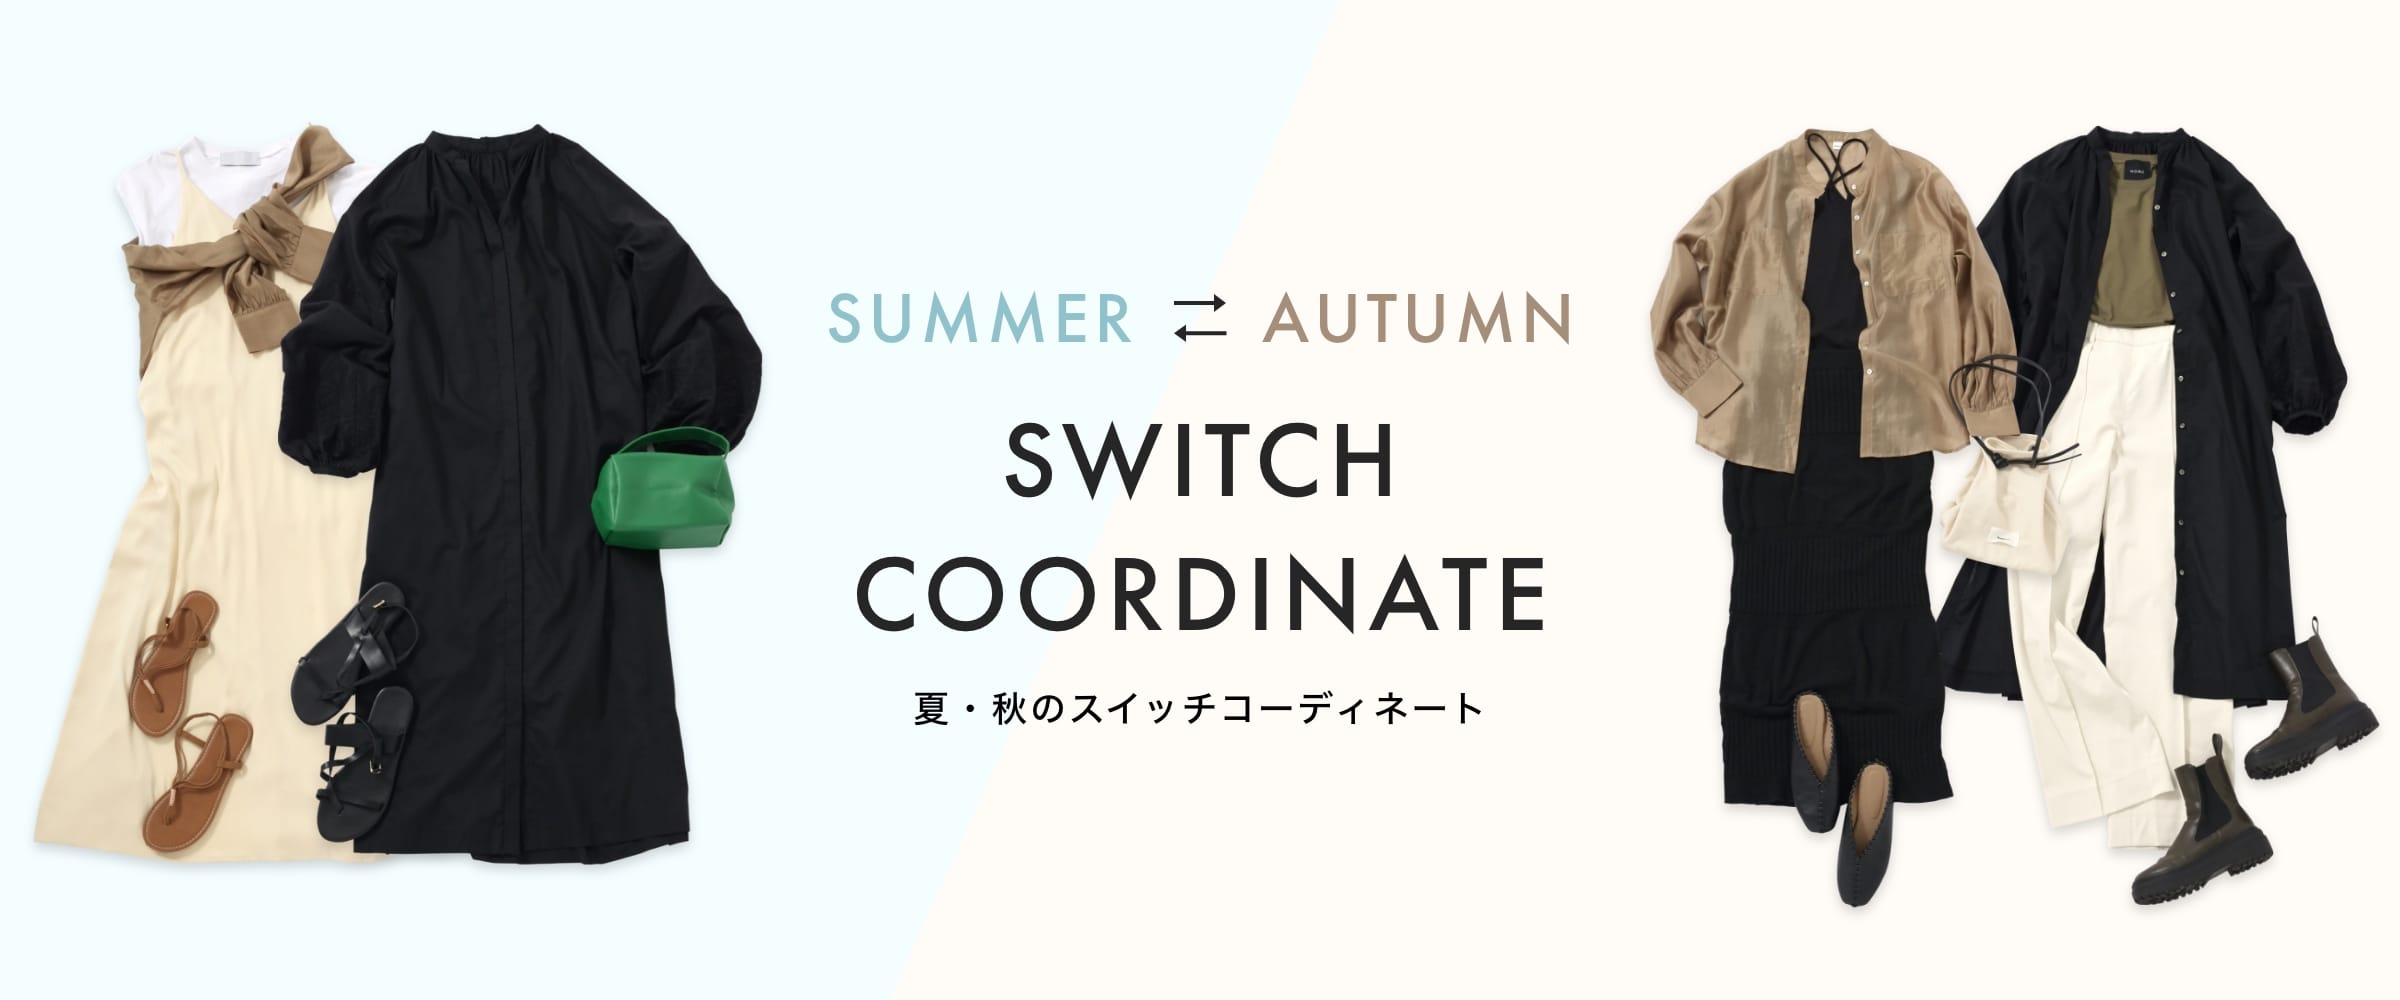 SWITCH COORDINATE 夏・秋のスイッチコーディネート